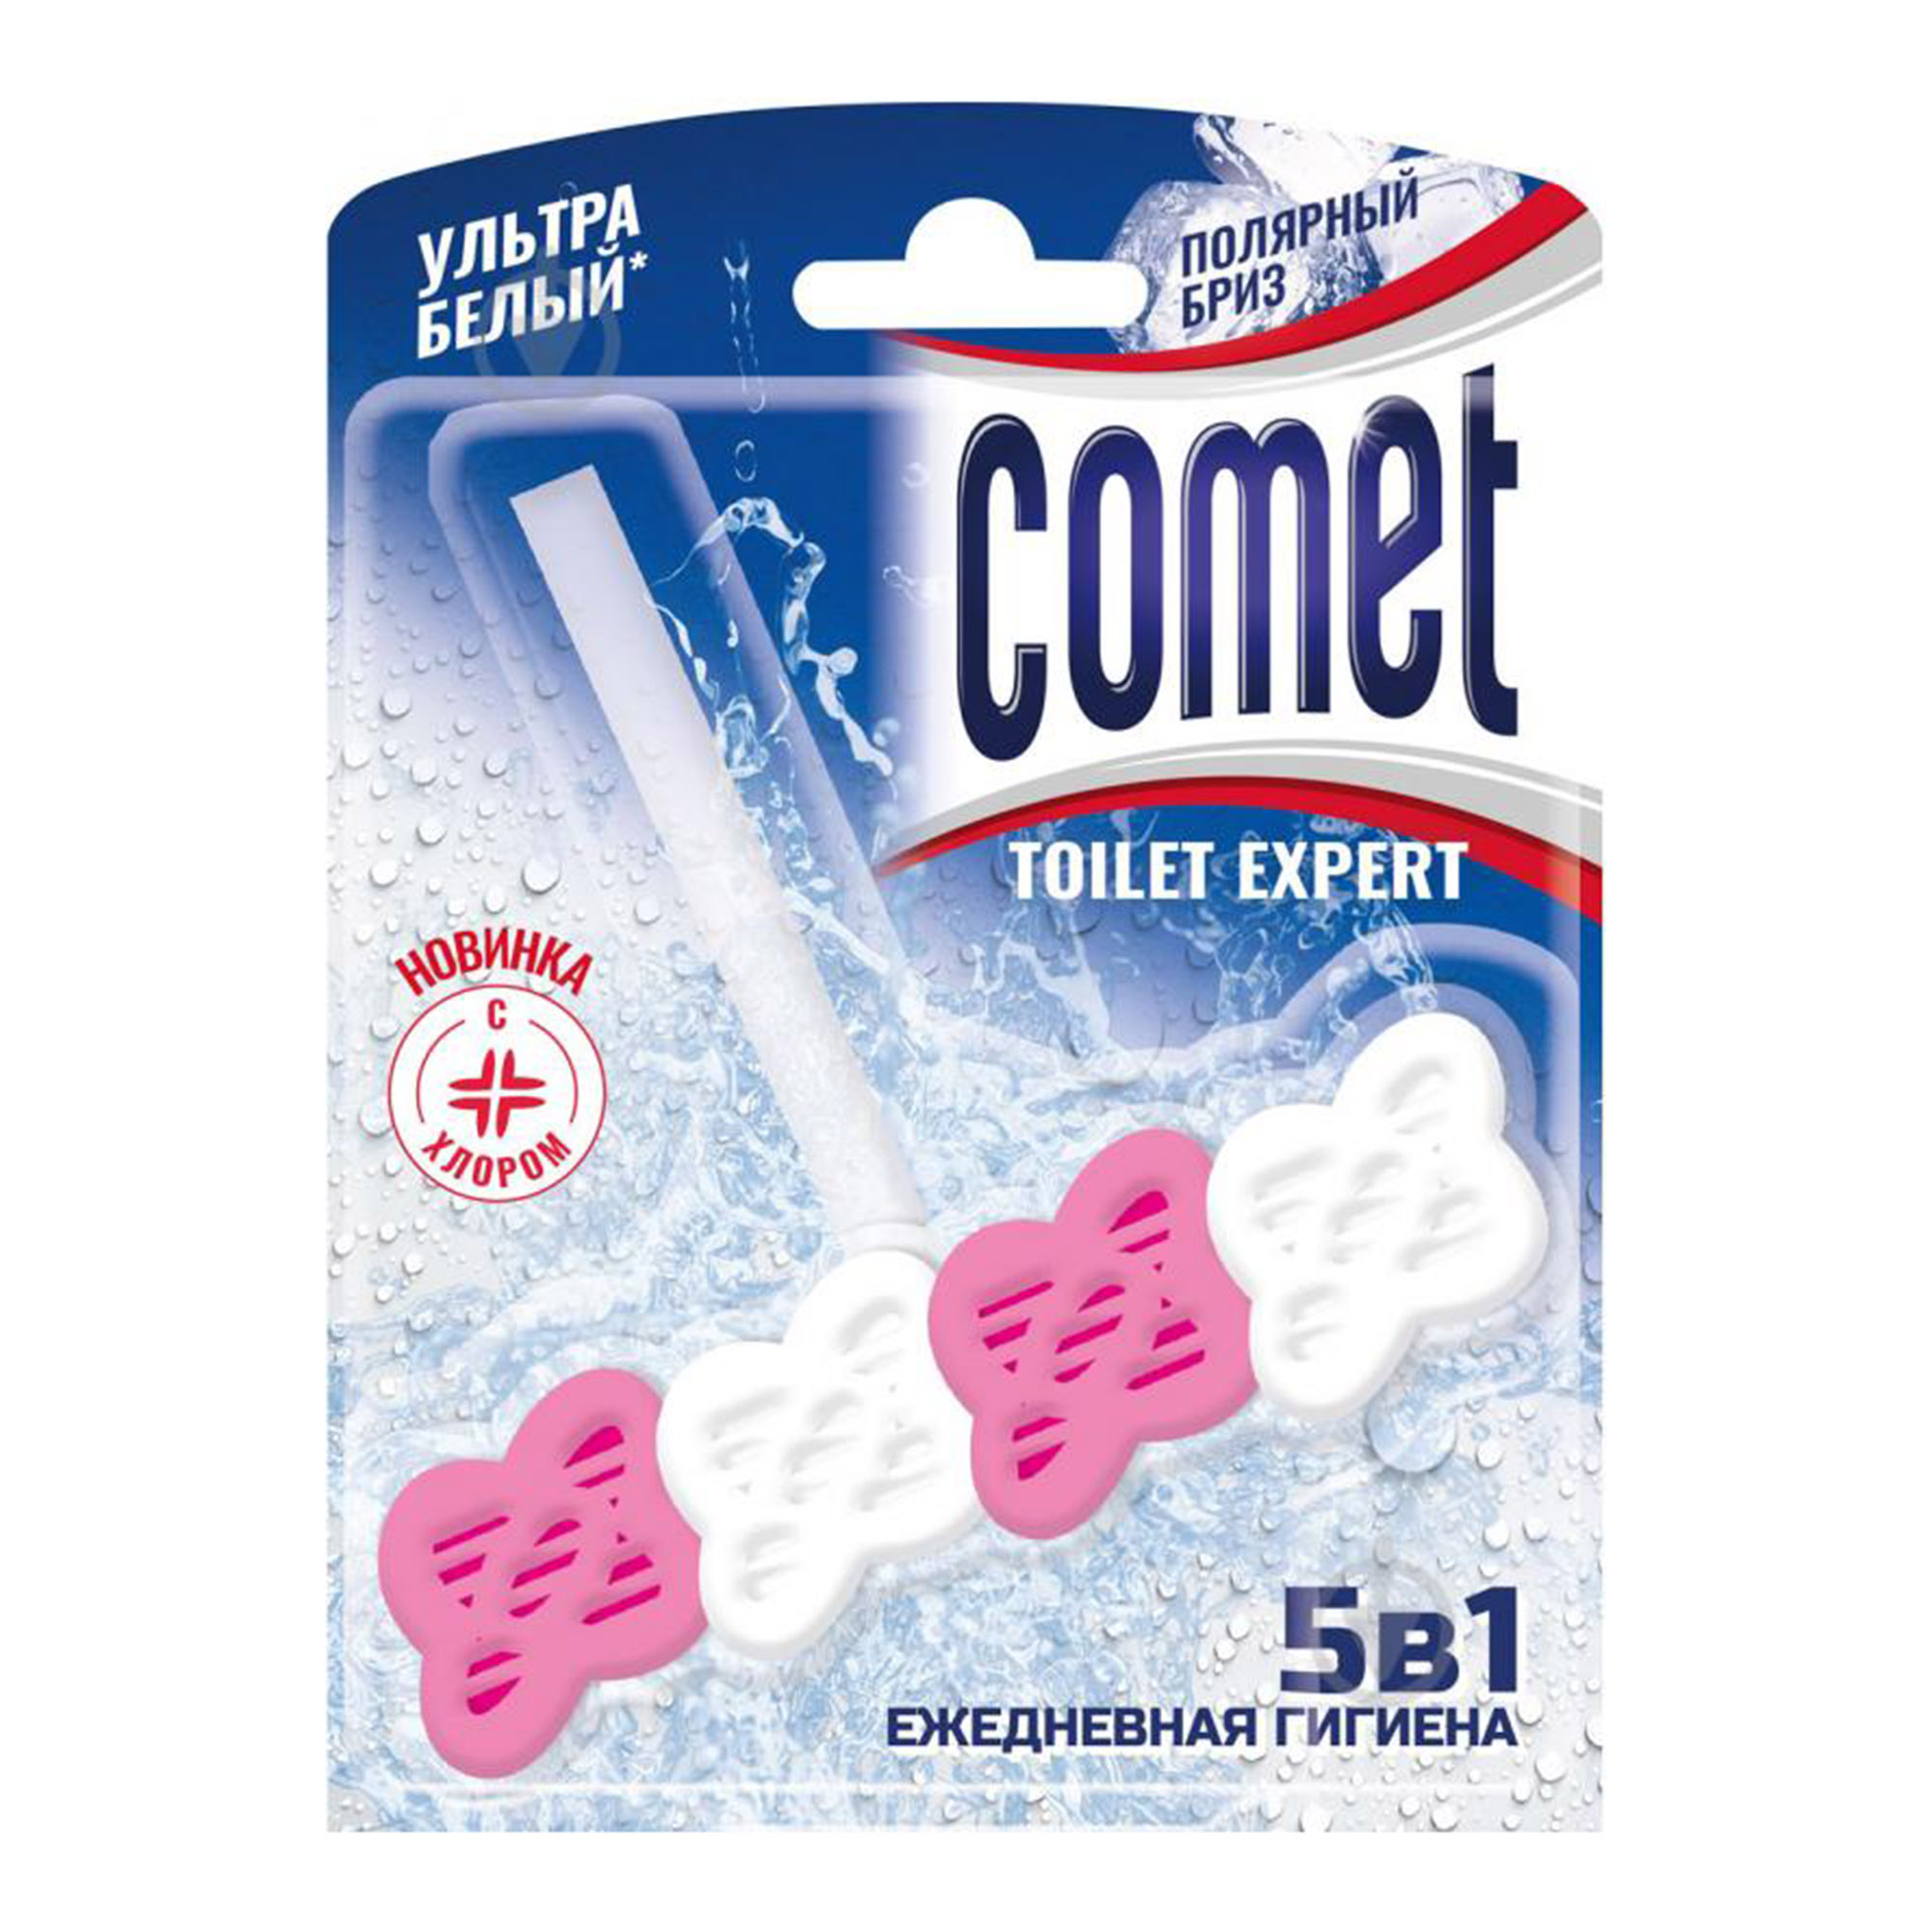 comet 17 Туалетный блок Comet Полярный бриз 48 г